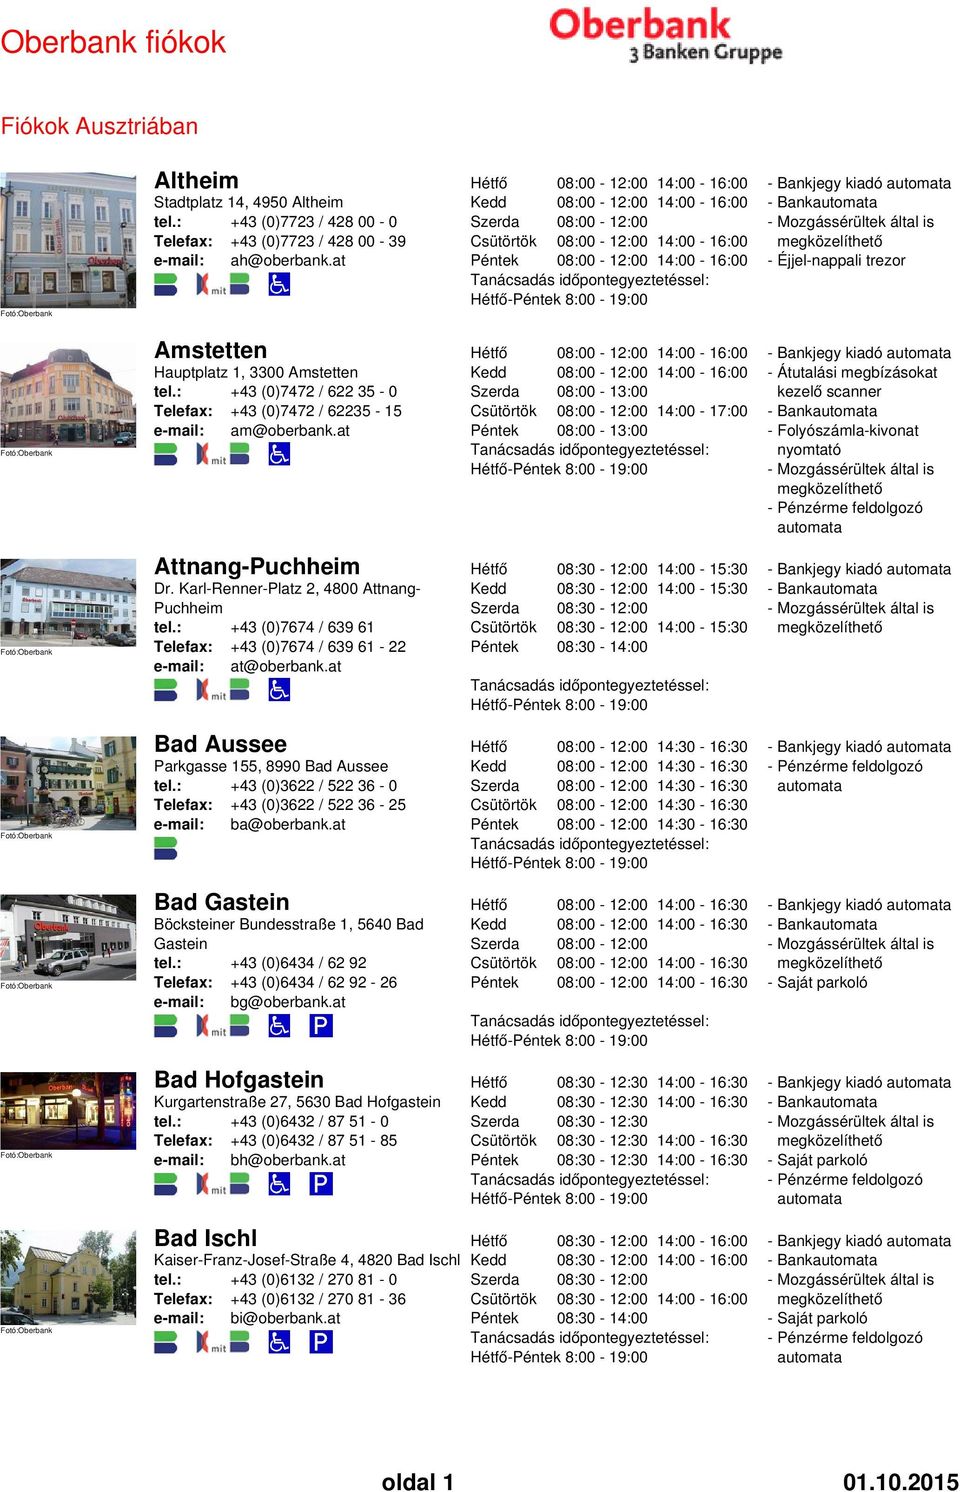 at 08:00-13:00 14:00-17:00 08:00-13:00-8:00-19:00 - Átutalási megbízásokat kezelő scanner Attnang-Puchheim Dr. Karl-Renner-Platz 2, 4800 Attnang- Puchheim tel.